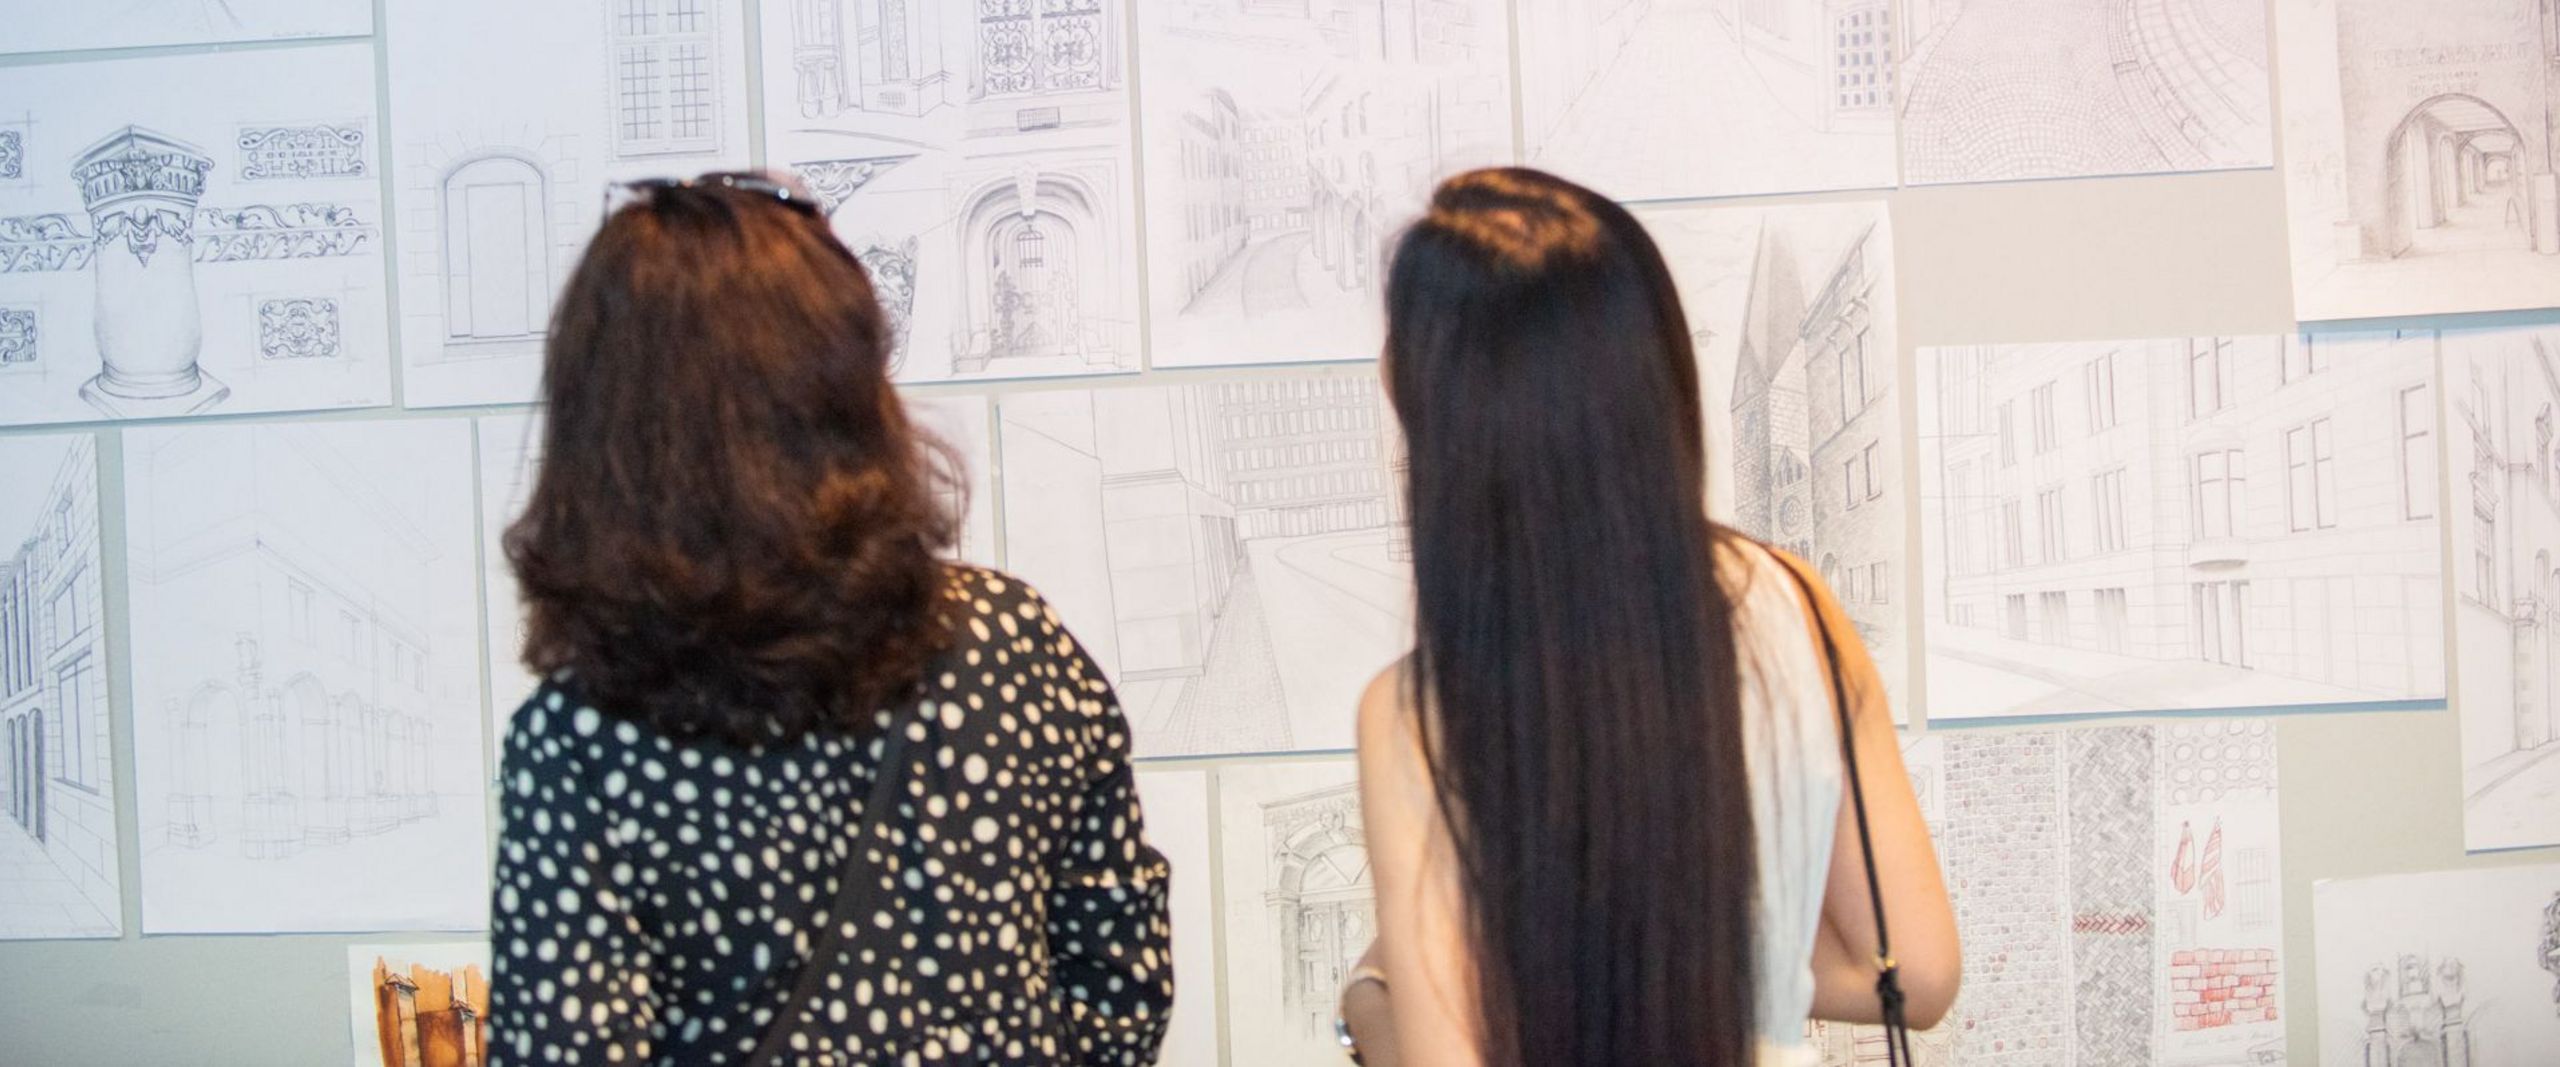 Zwei Frauen betrachten architektonische Skizzen an einer Wand. 